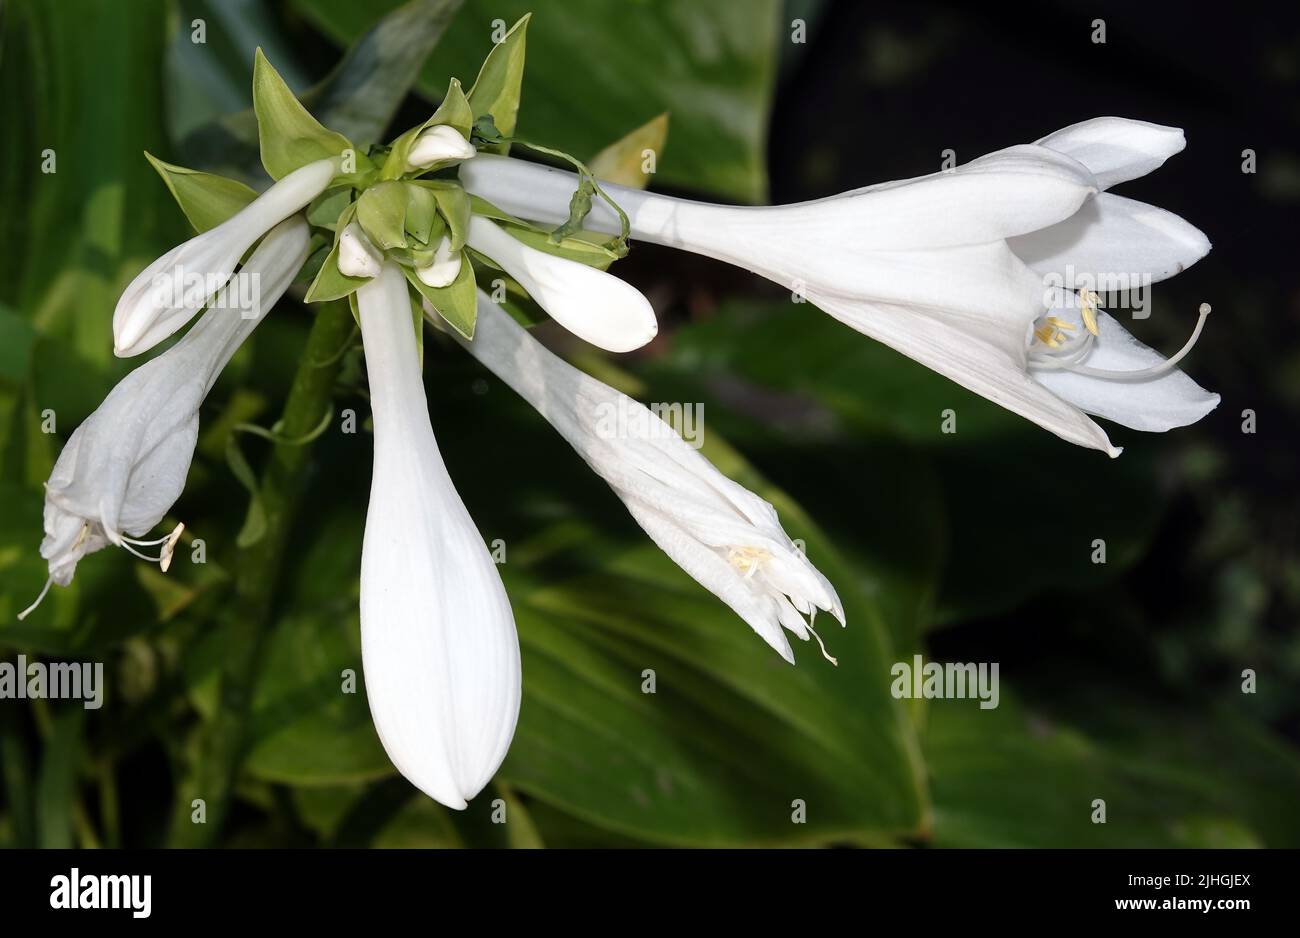 Blumen duftende Lilie ist eine mehrjährige krautige Pflanze, die Familie der Liliengewächse. Stockfoto